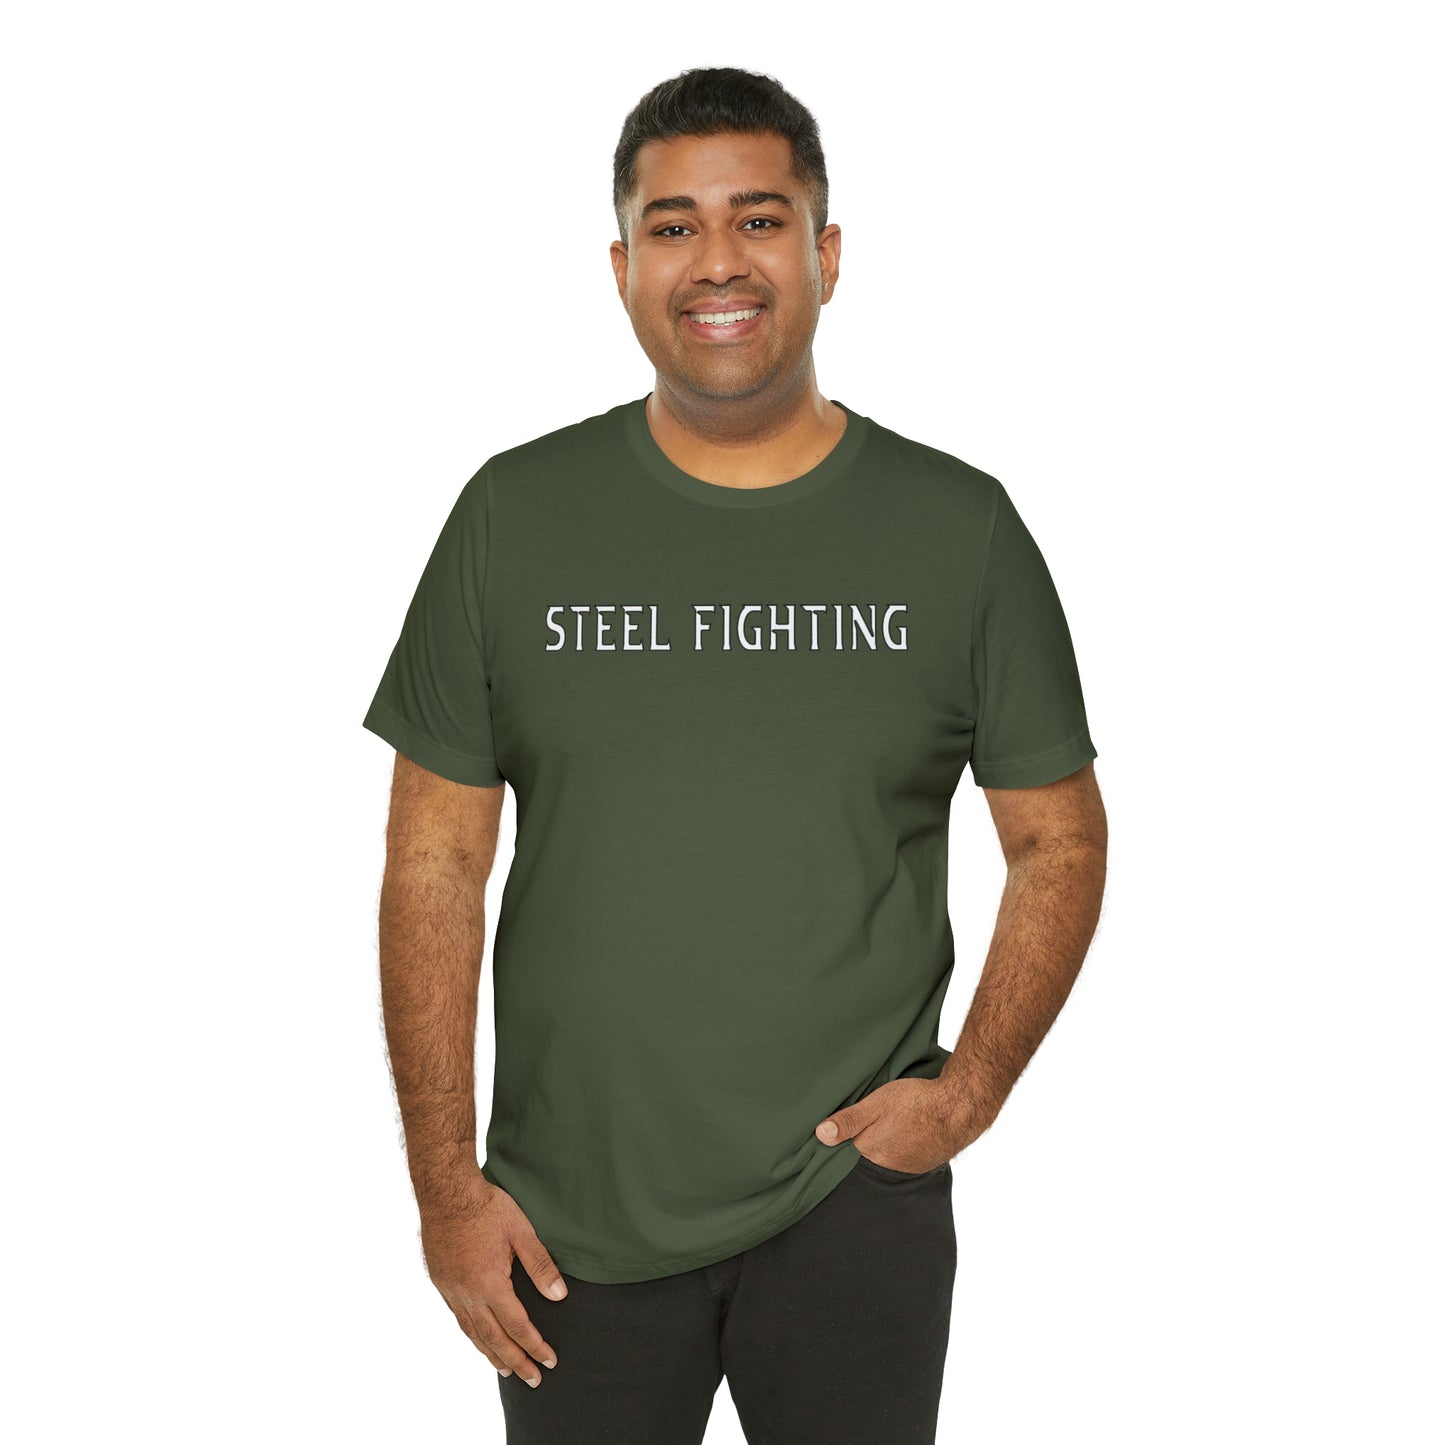 Veterans of Steel "STEEL FIGHTING" TEESHIRT